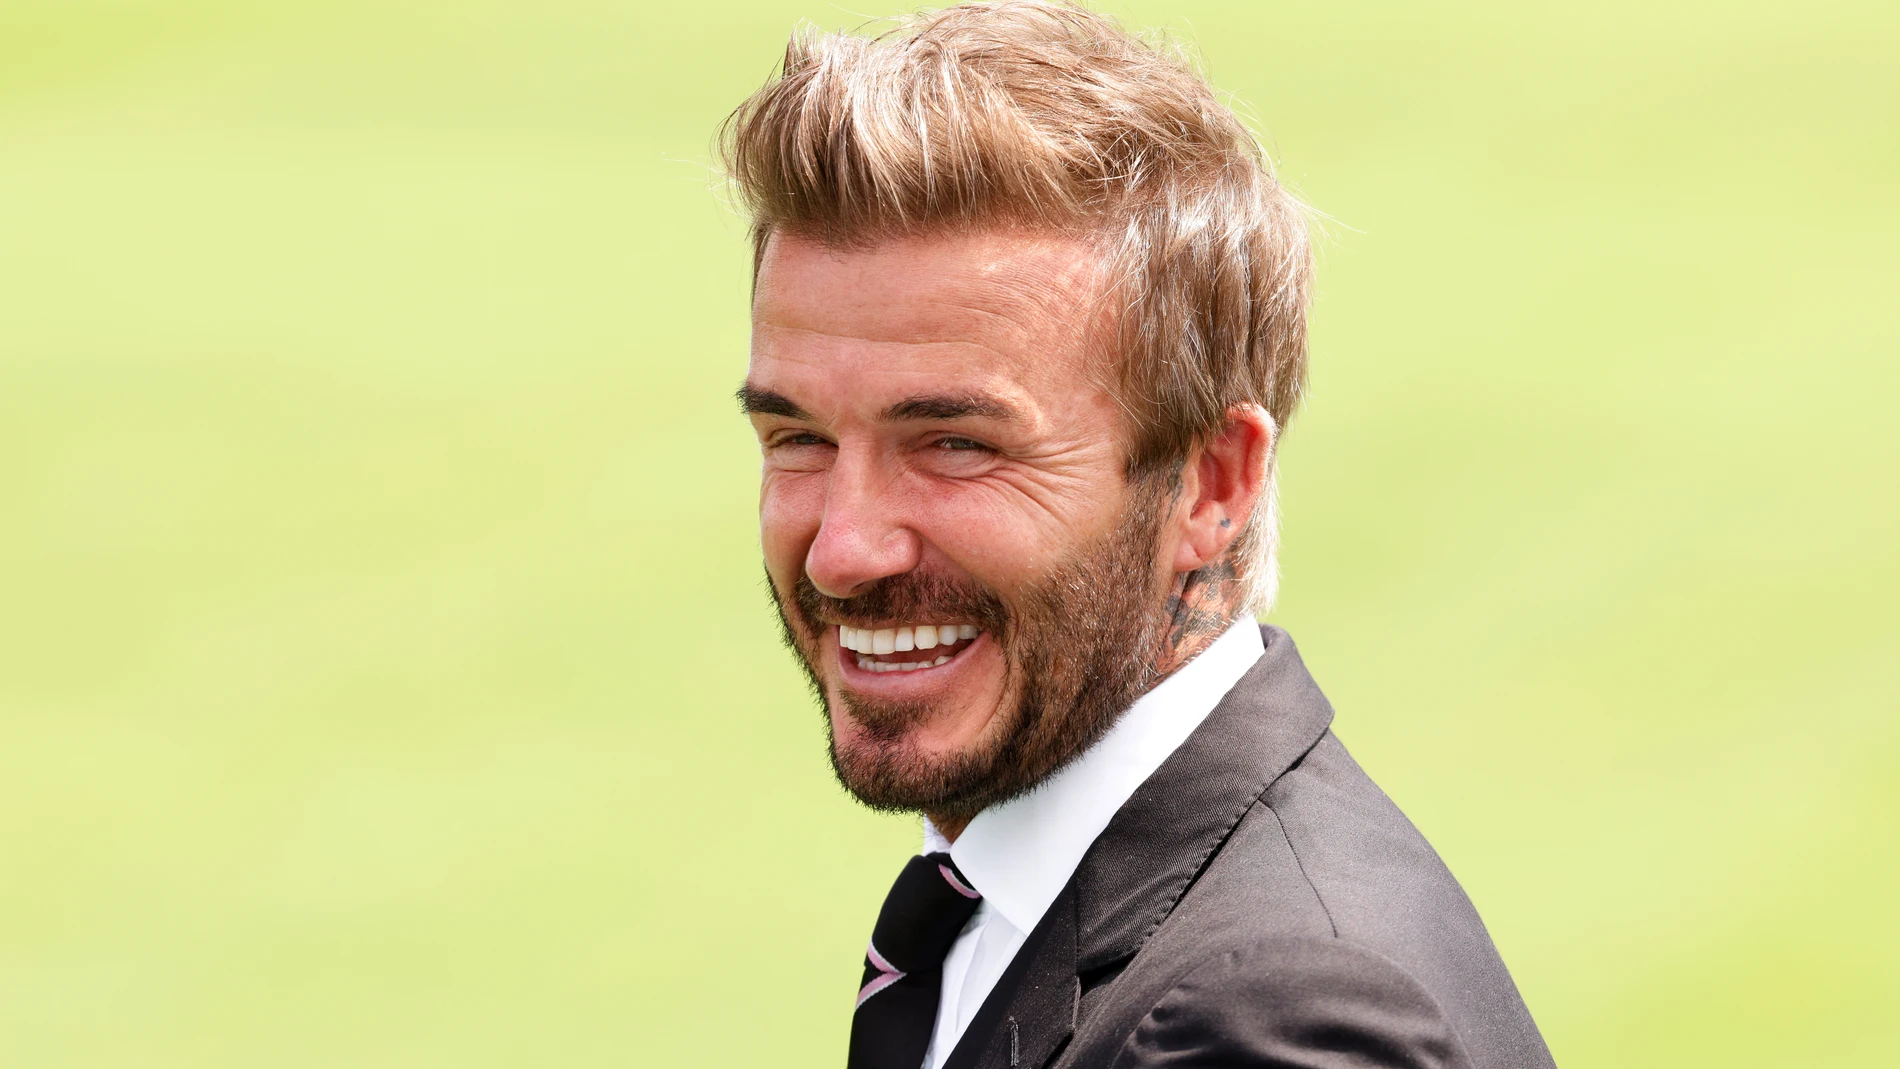 El motivo por el que la policía ha interrogado a David Beckham en Italia (con final inesperado) | Europa FM